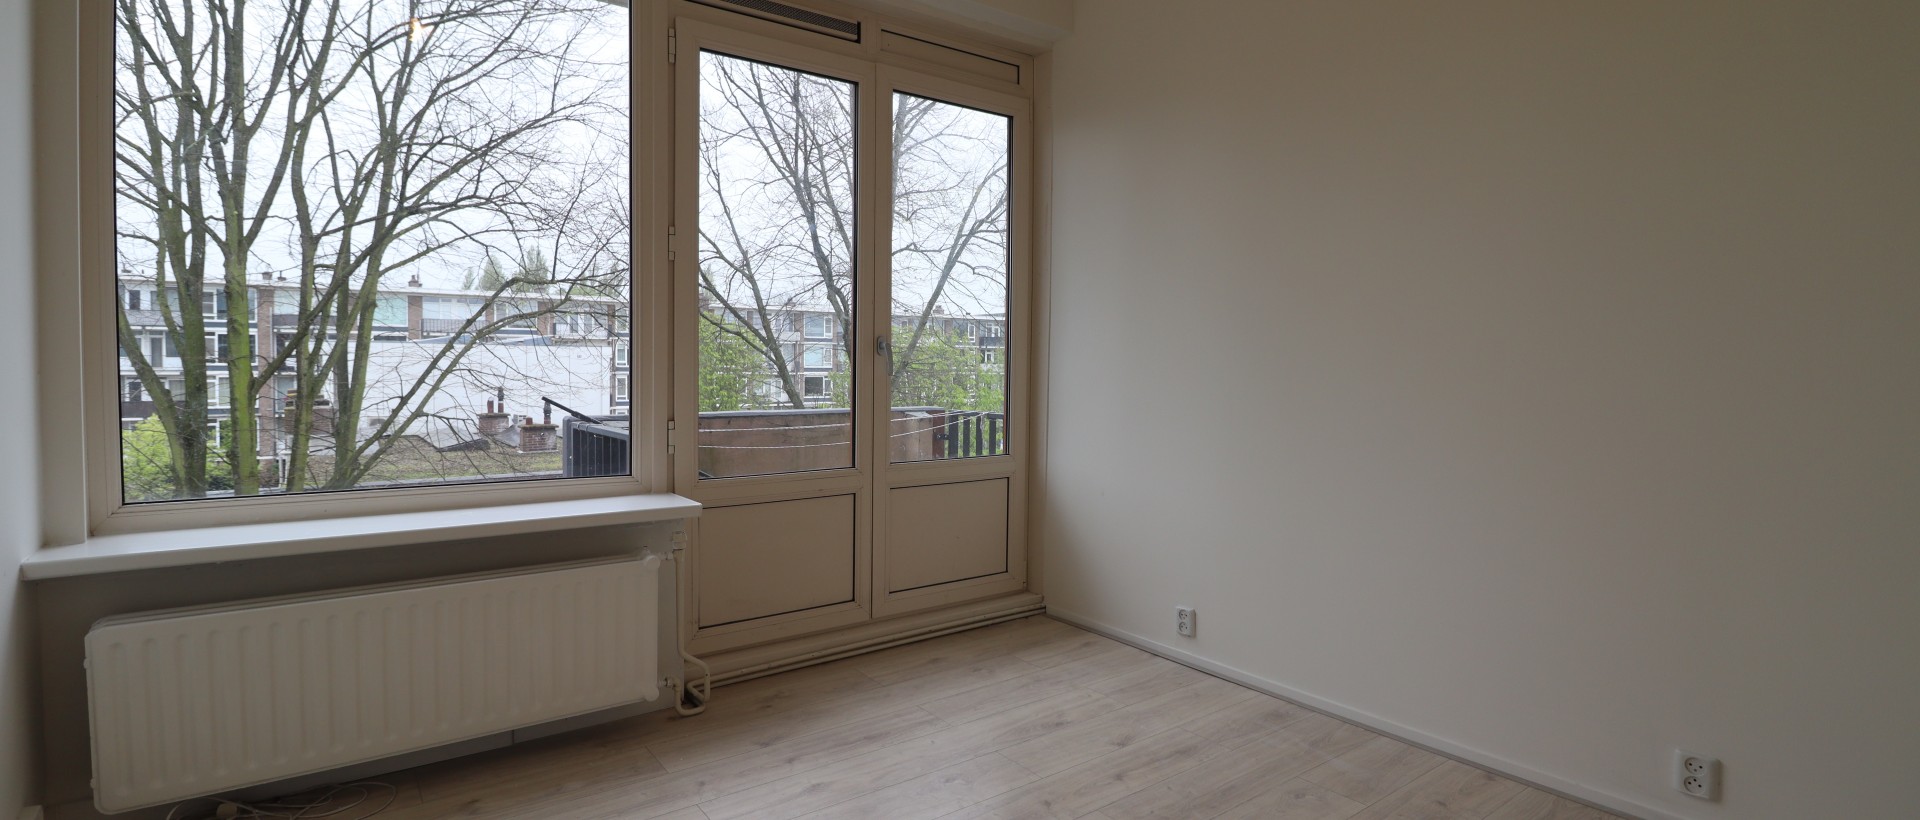 Bekijk foto 1/19 van apartment in Vlaardingen